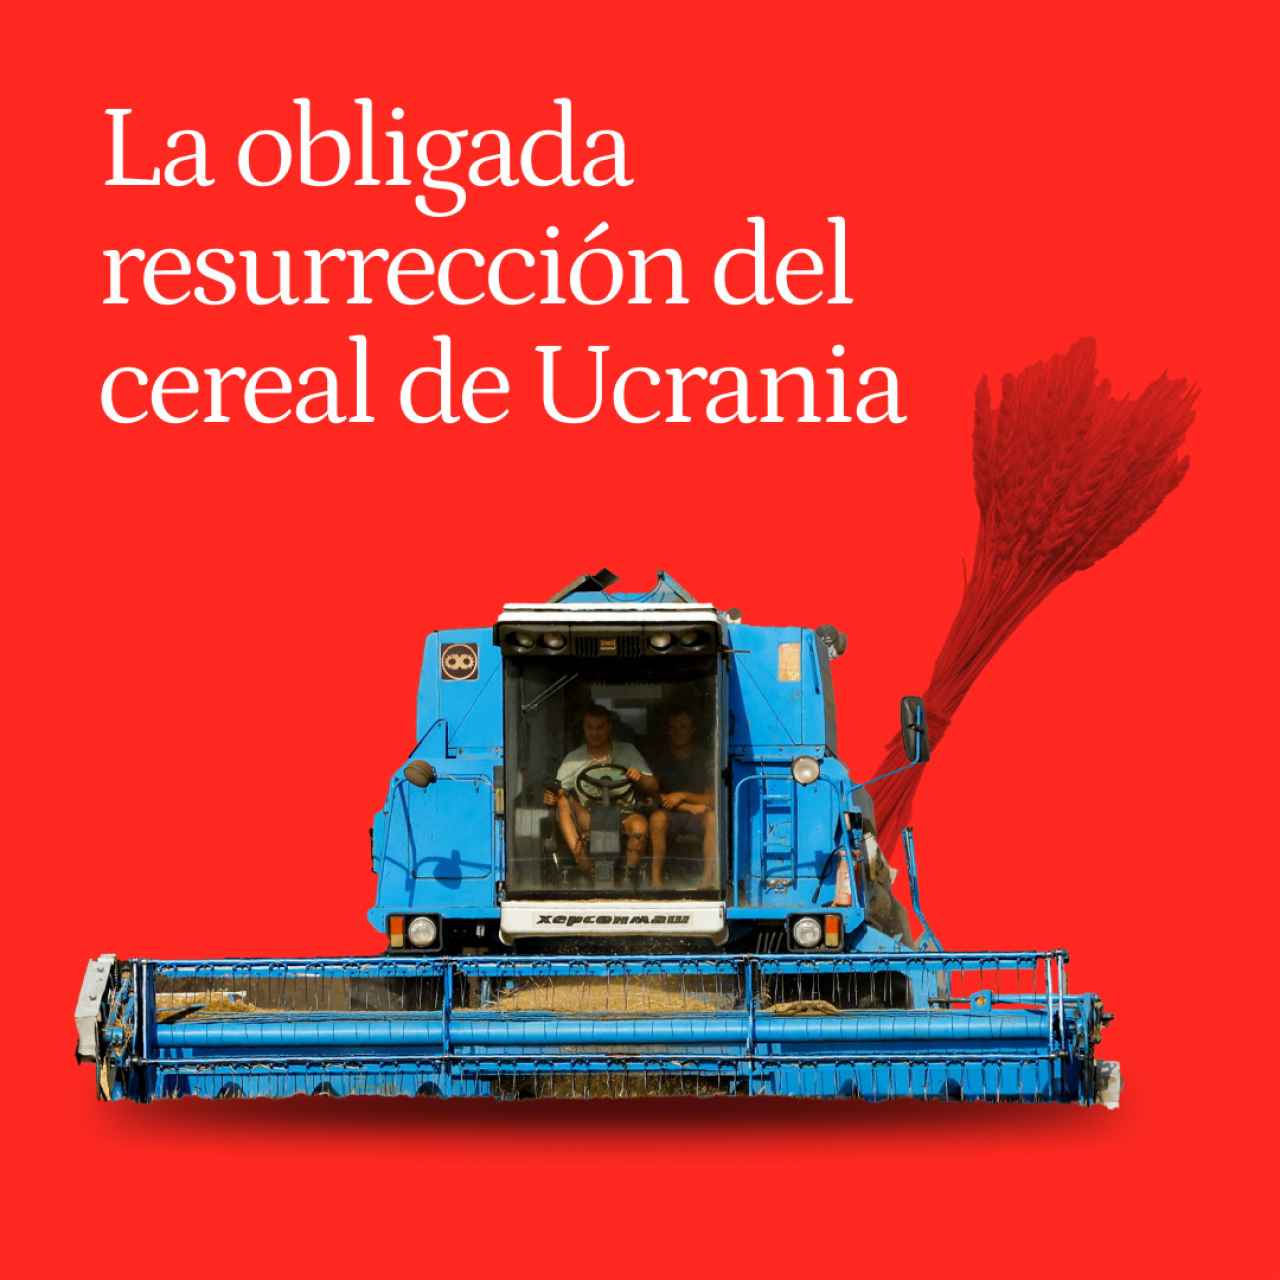 La obligada resurrección del cereal de Ucrania, entre minas y muerte: hay que vender para sembrar